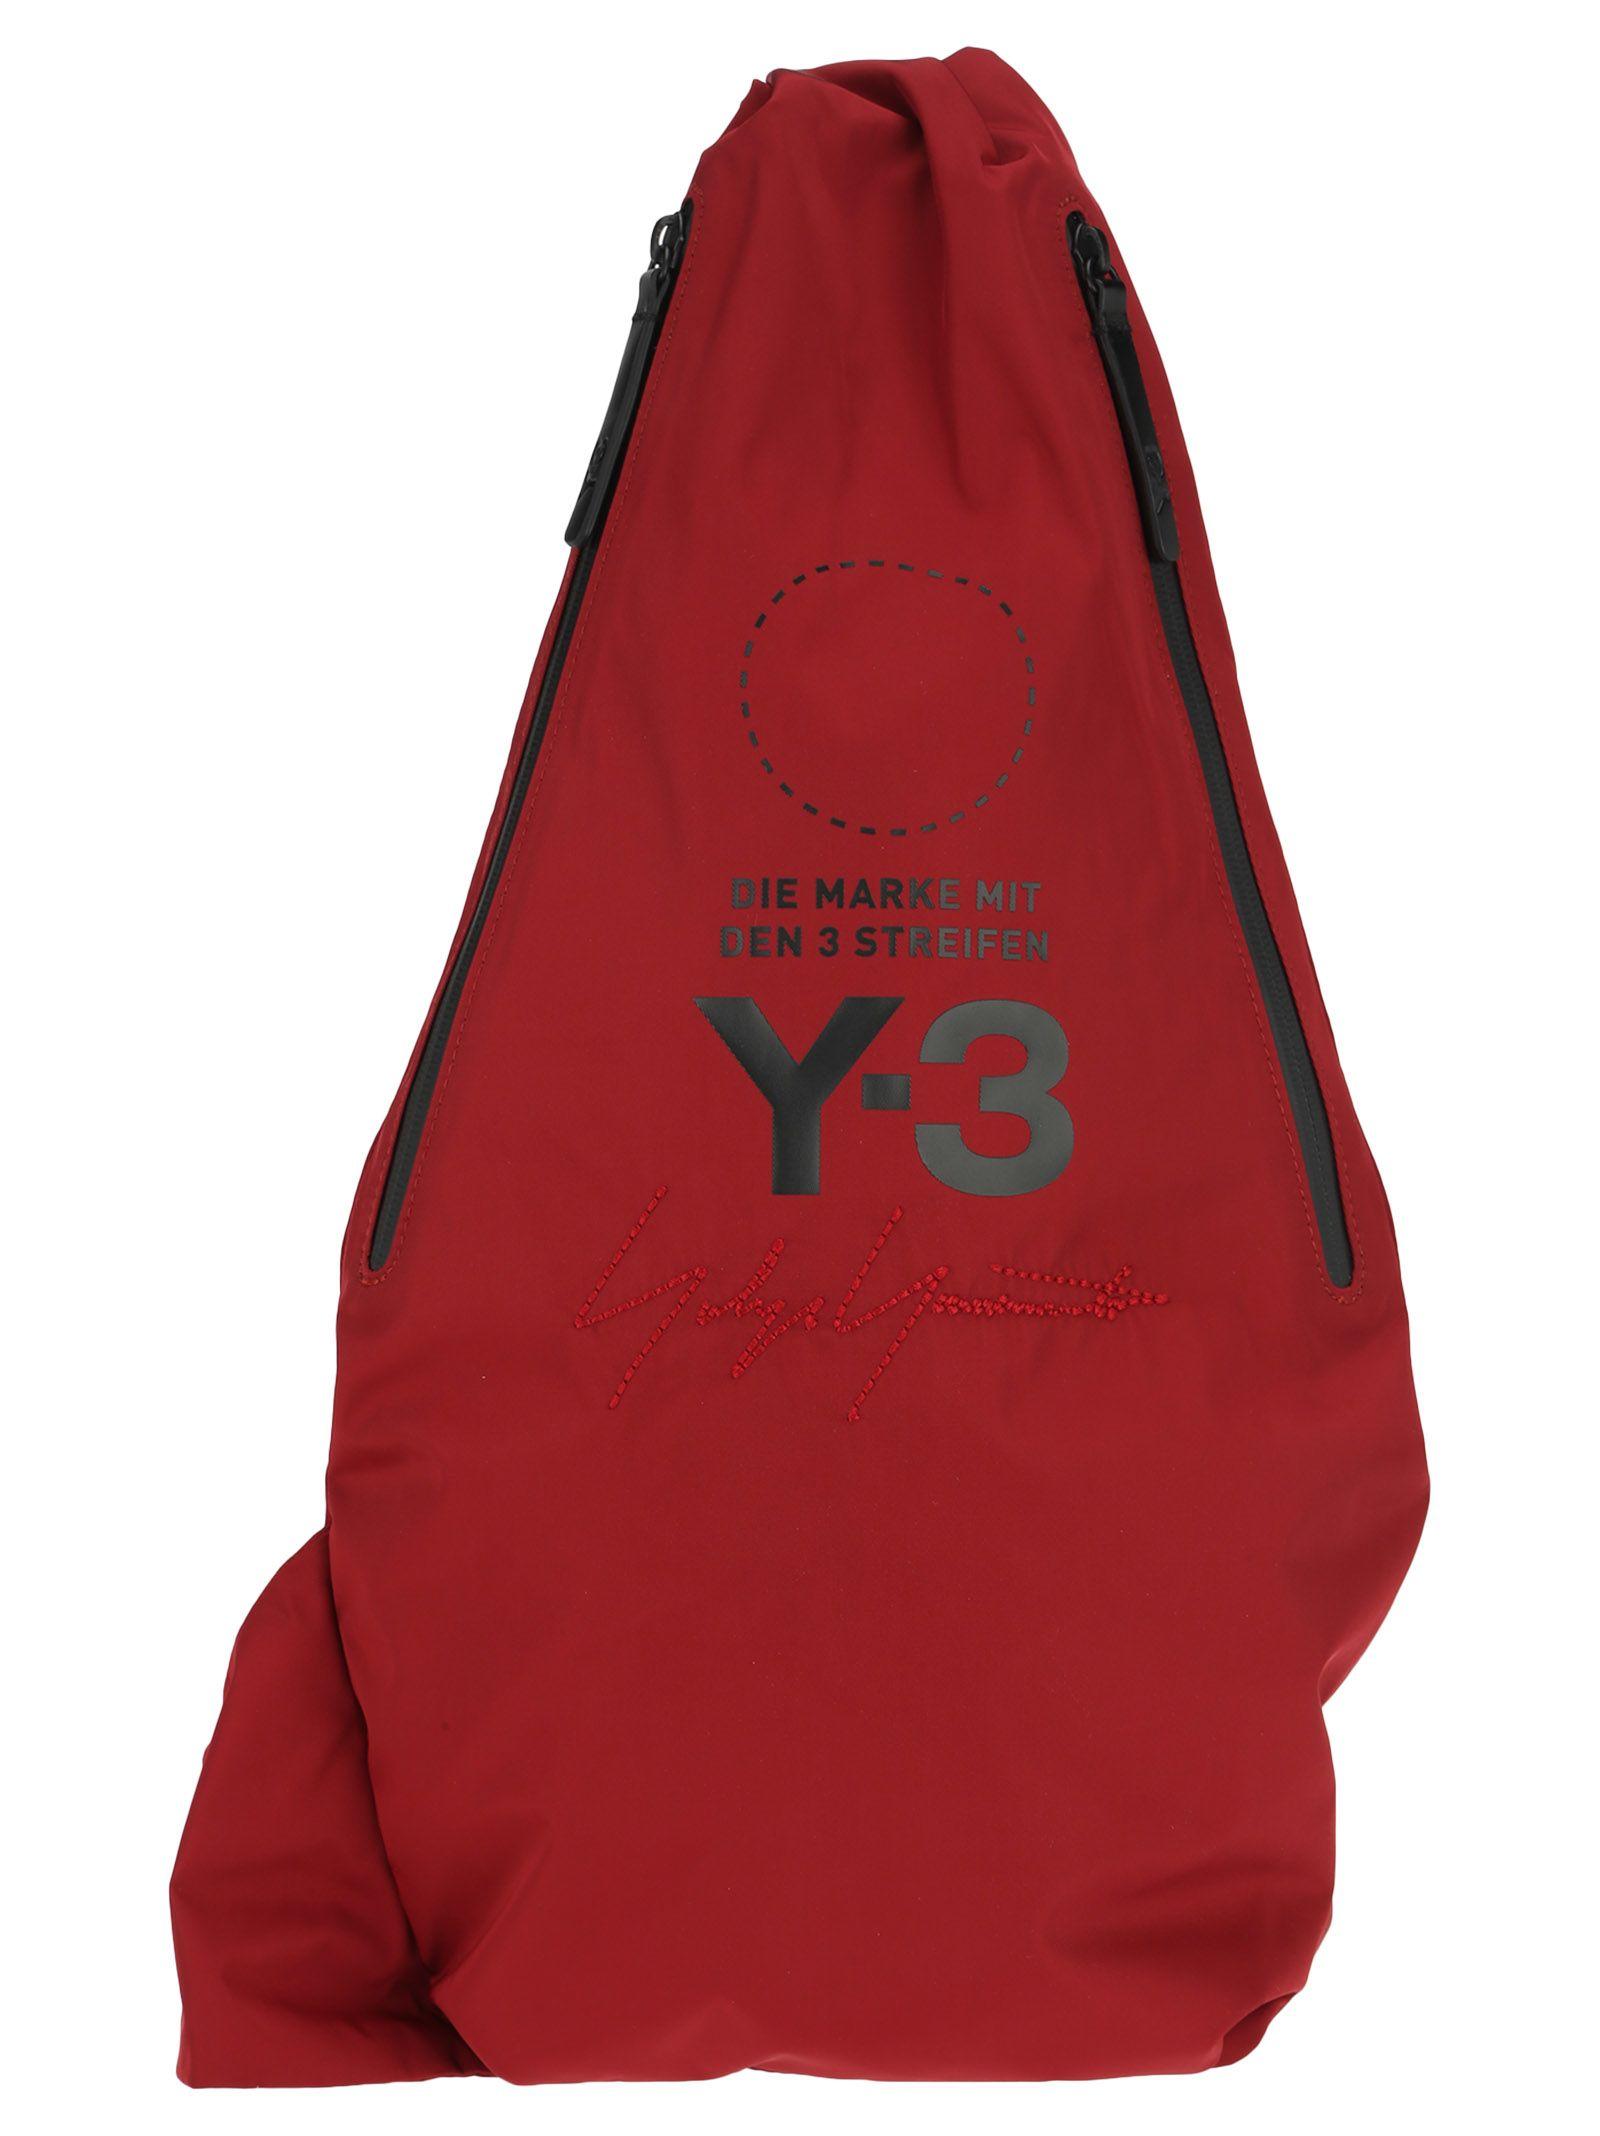 y3 backpack price